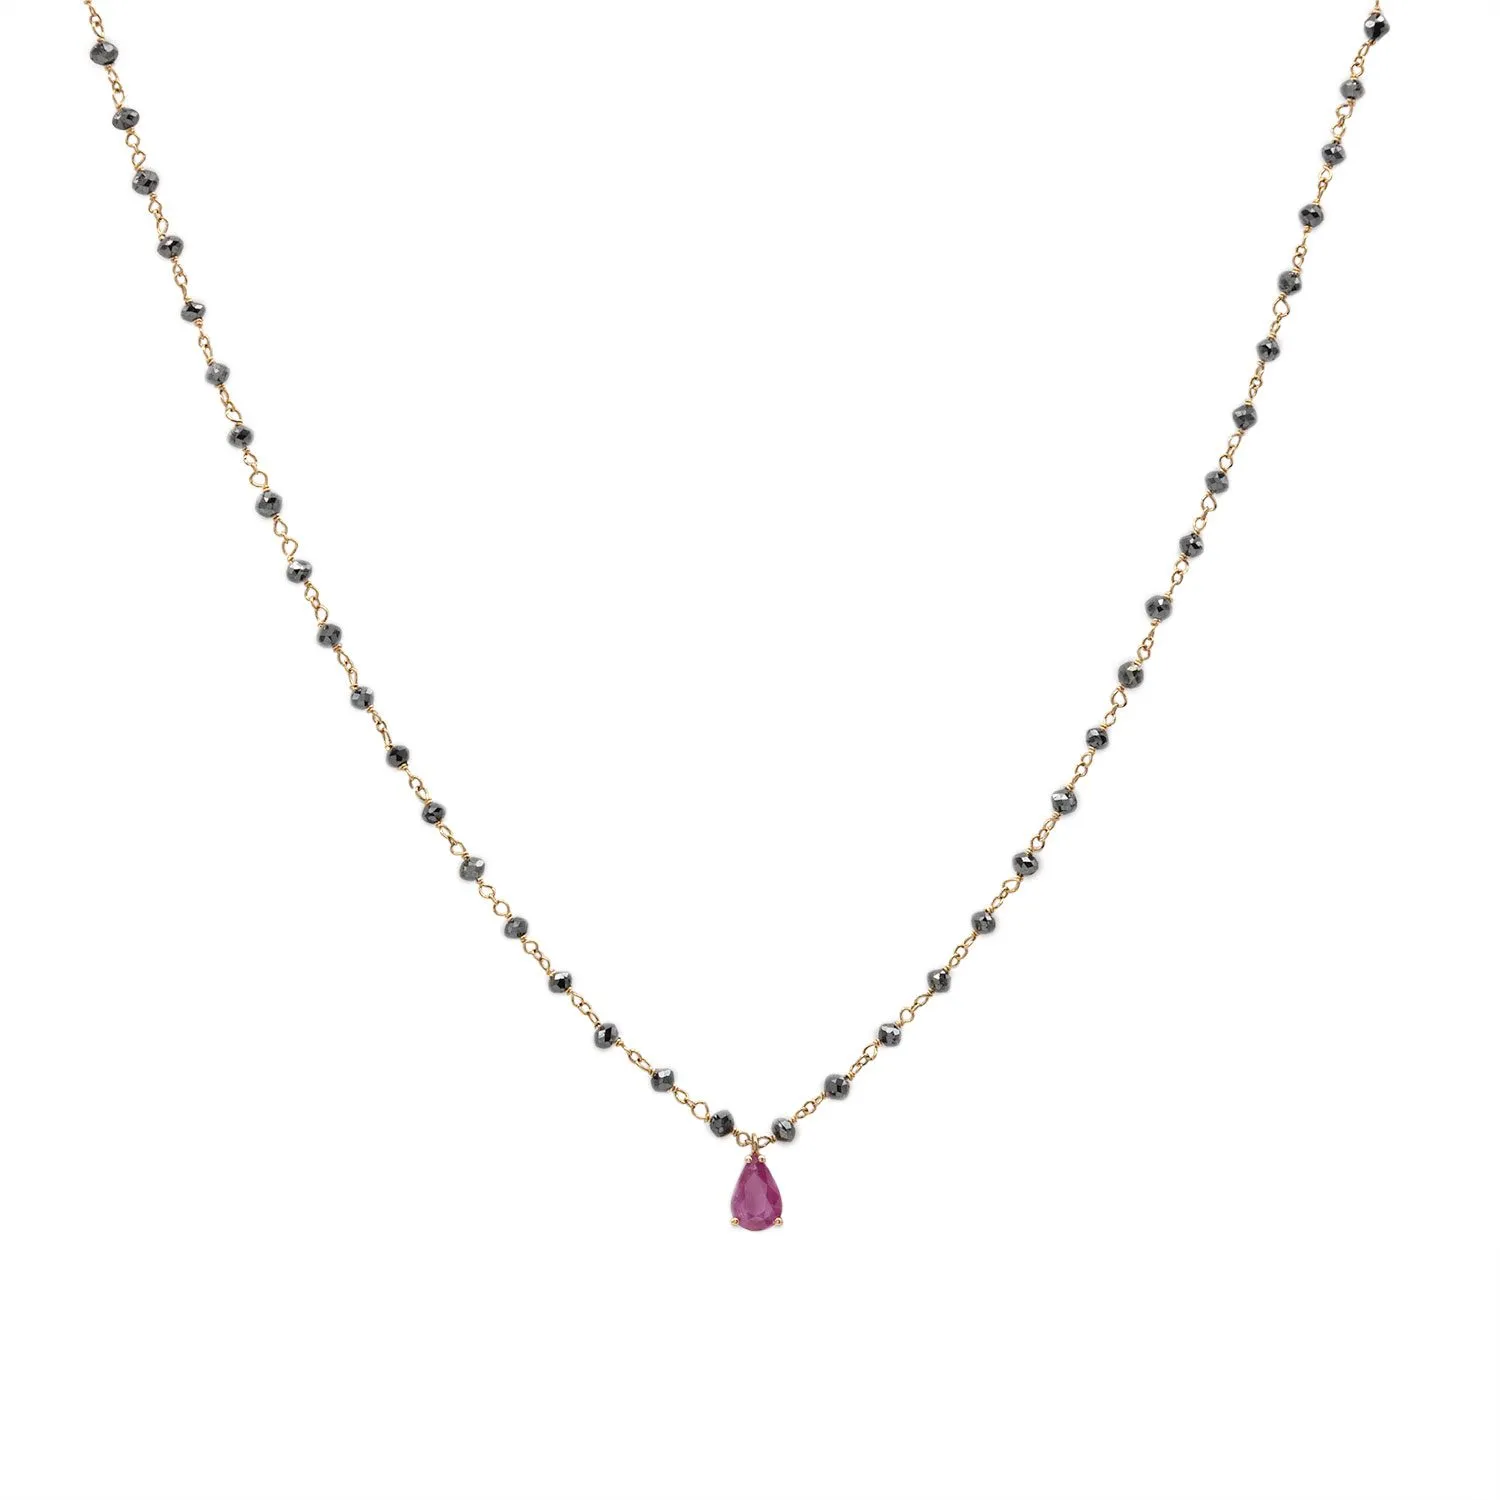 La gargantilla Atara está realizada en oro rosa con diamantes negros y un rubí